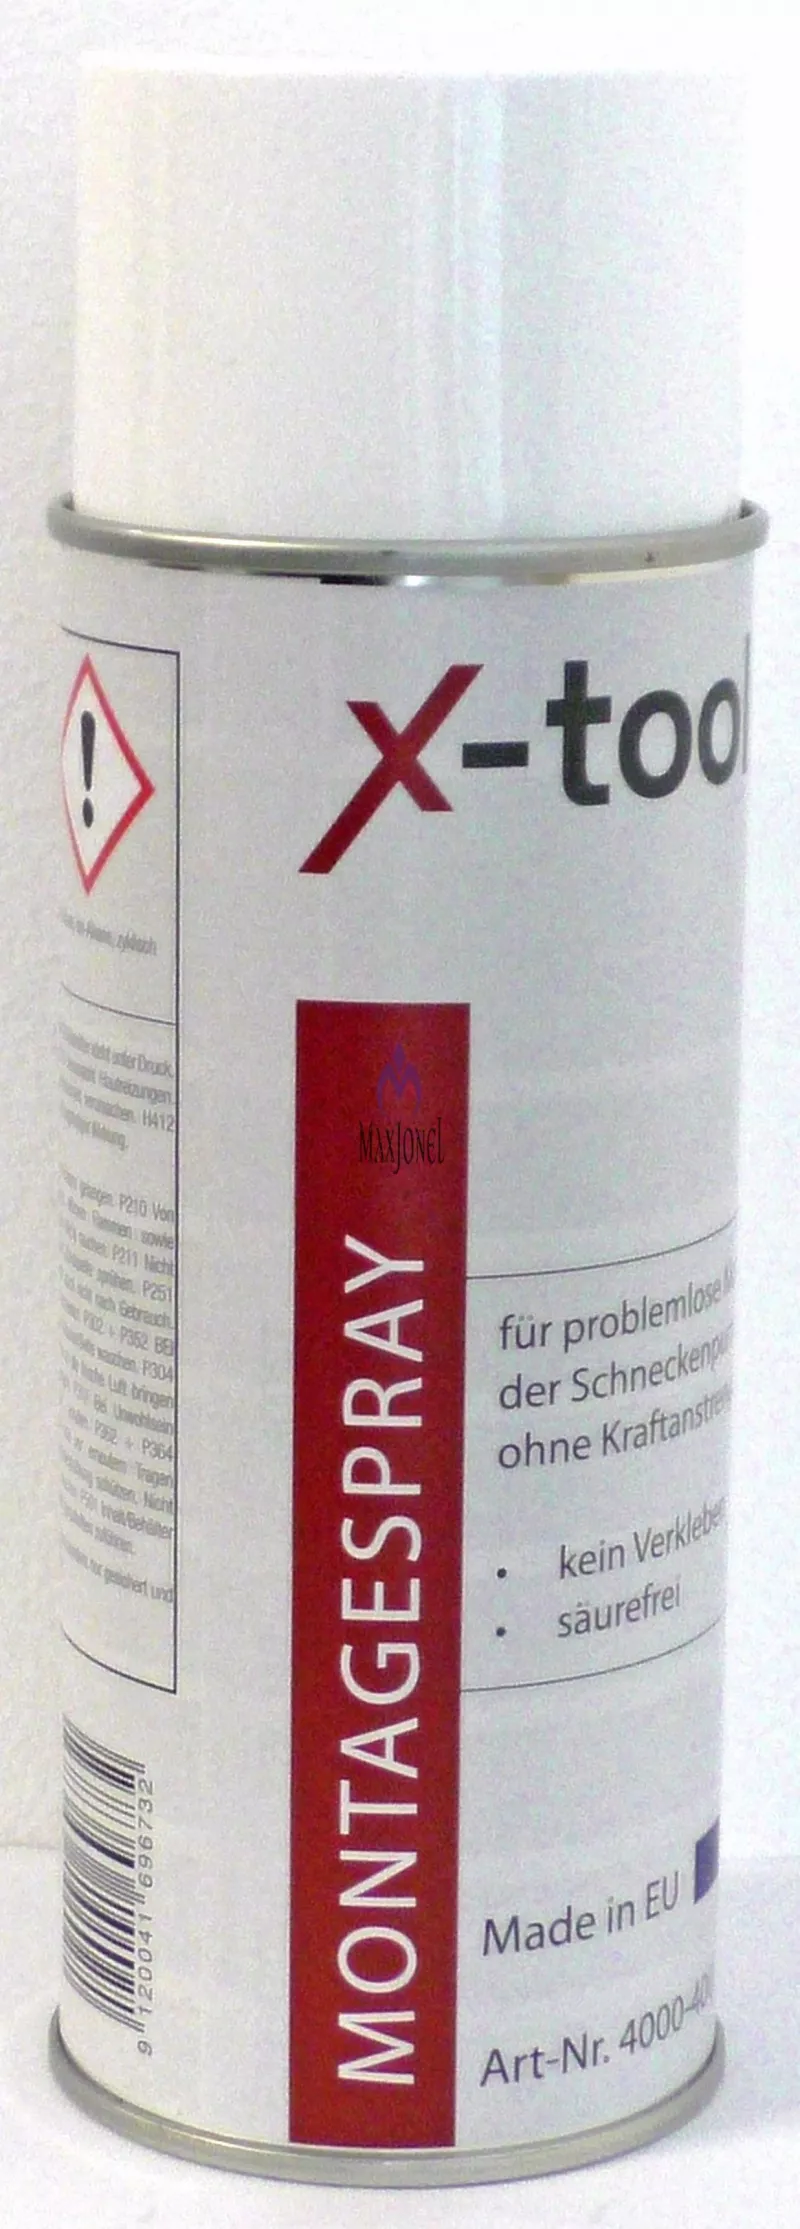 Spray de silicon 400 ml fara acid pentru stator / rotor, [],maxjonel.ro